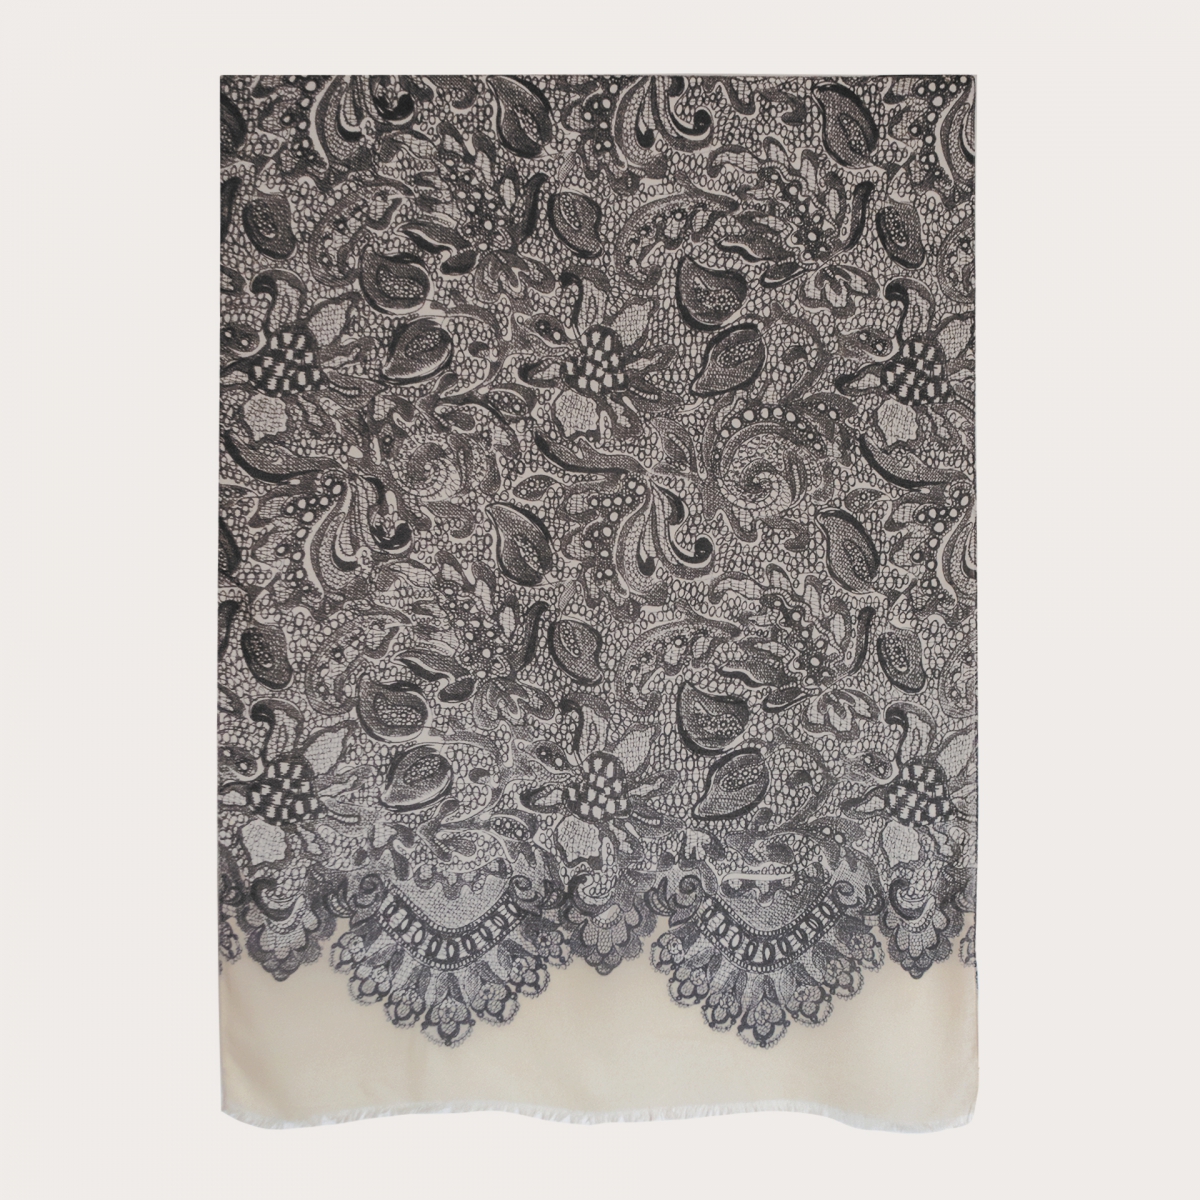 BRUCLE Morbido foulard in modal e cachemire, color crema con decorazioni bianco e nero